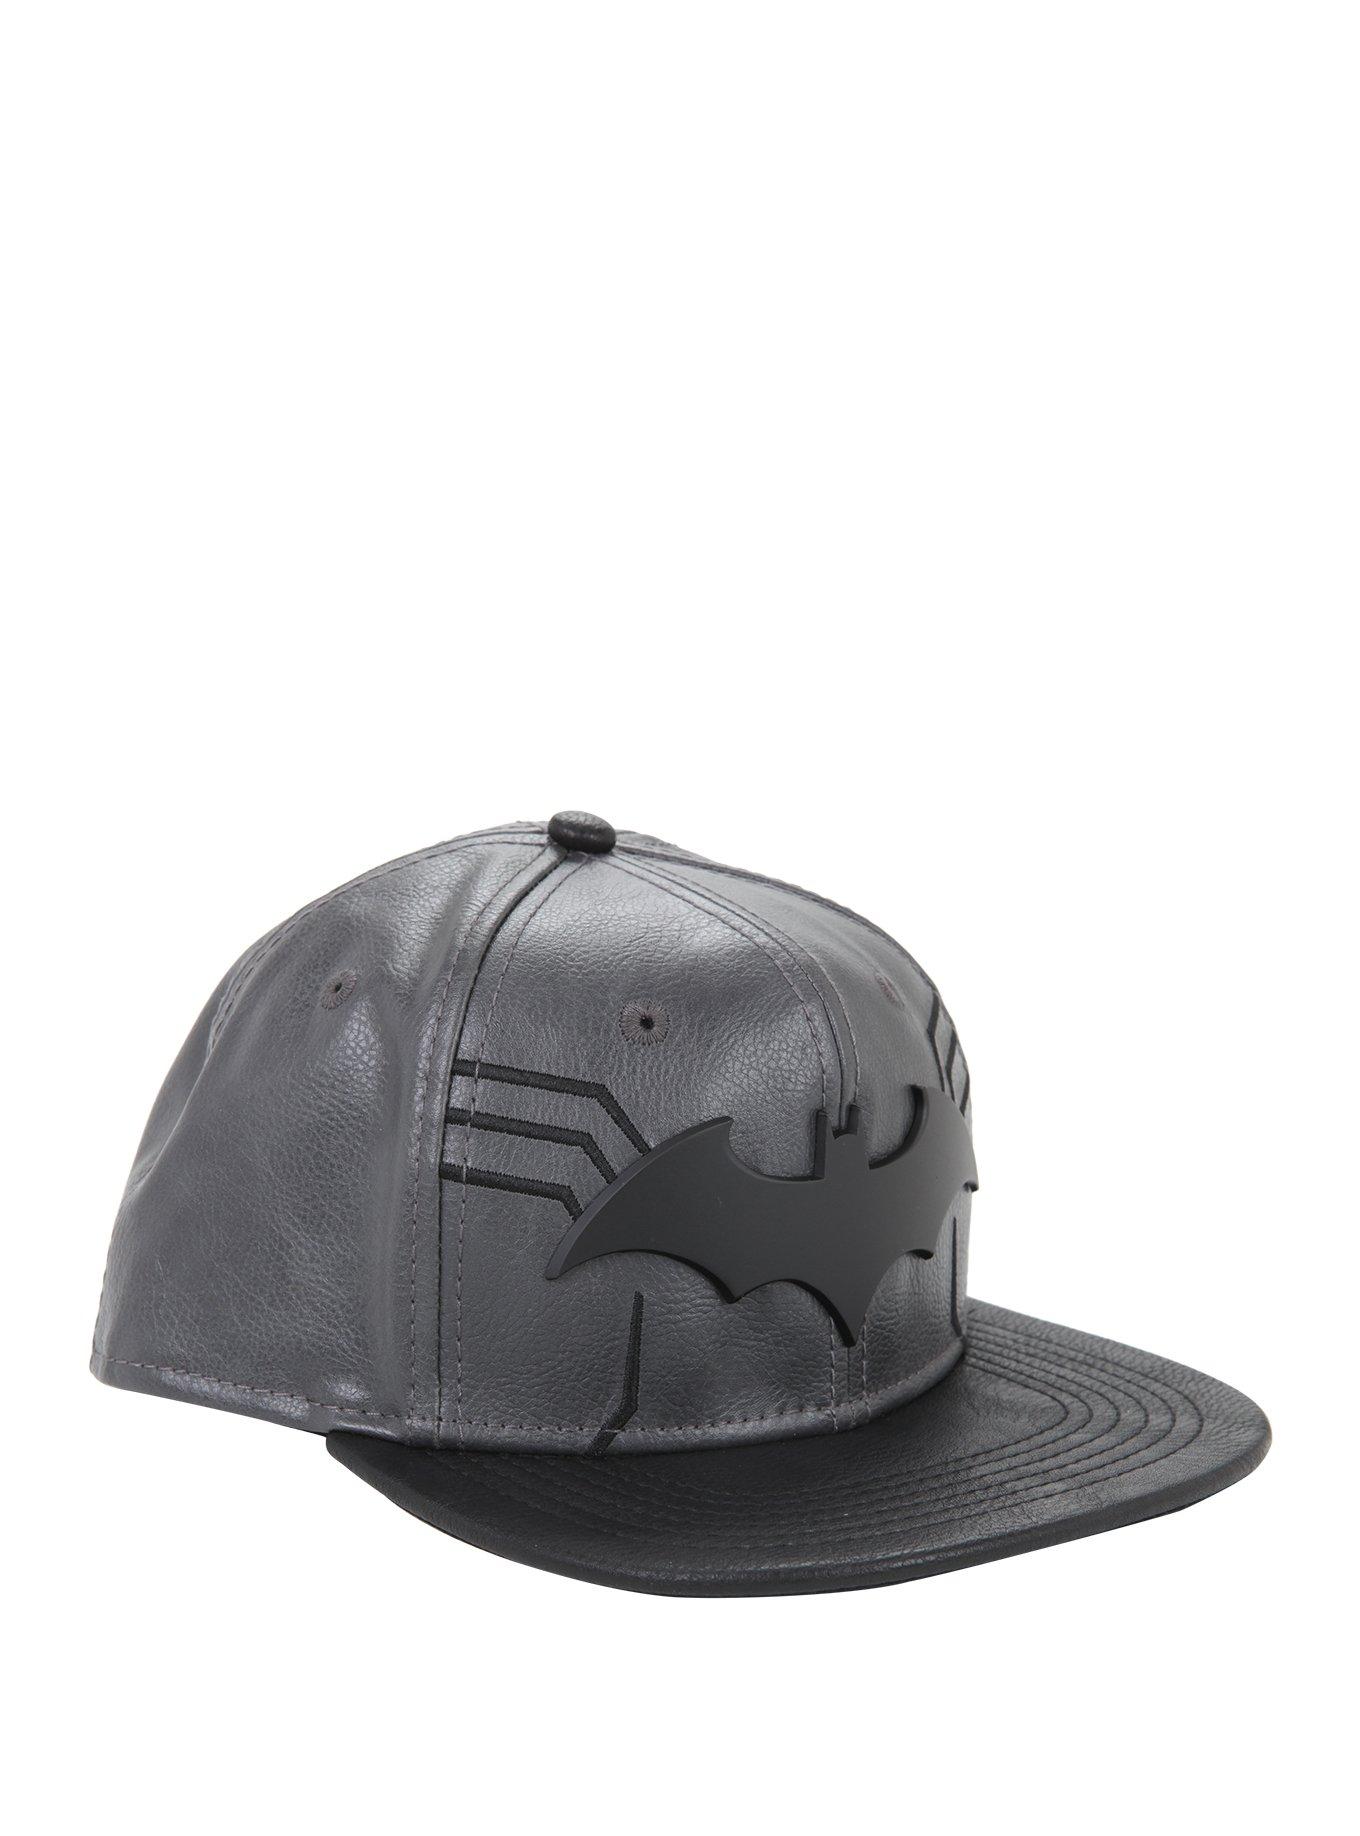 DC Comics Batman Faux Leather Snapback Hat, , hi-res